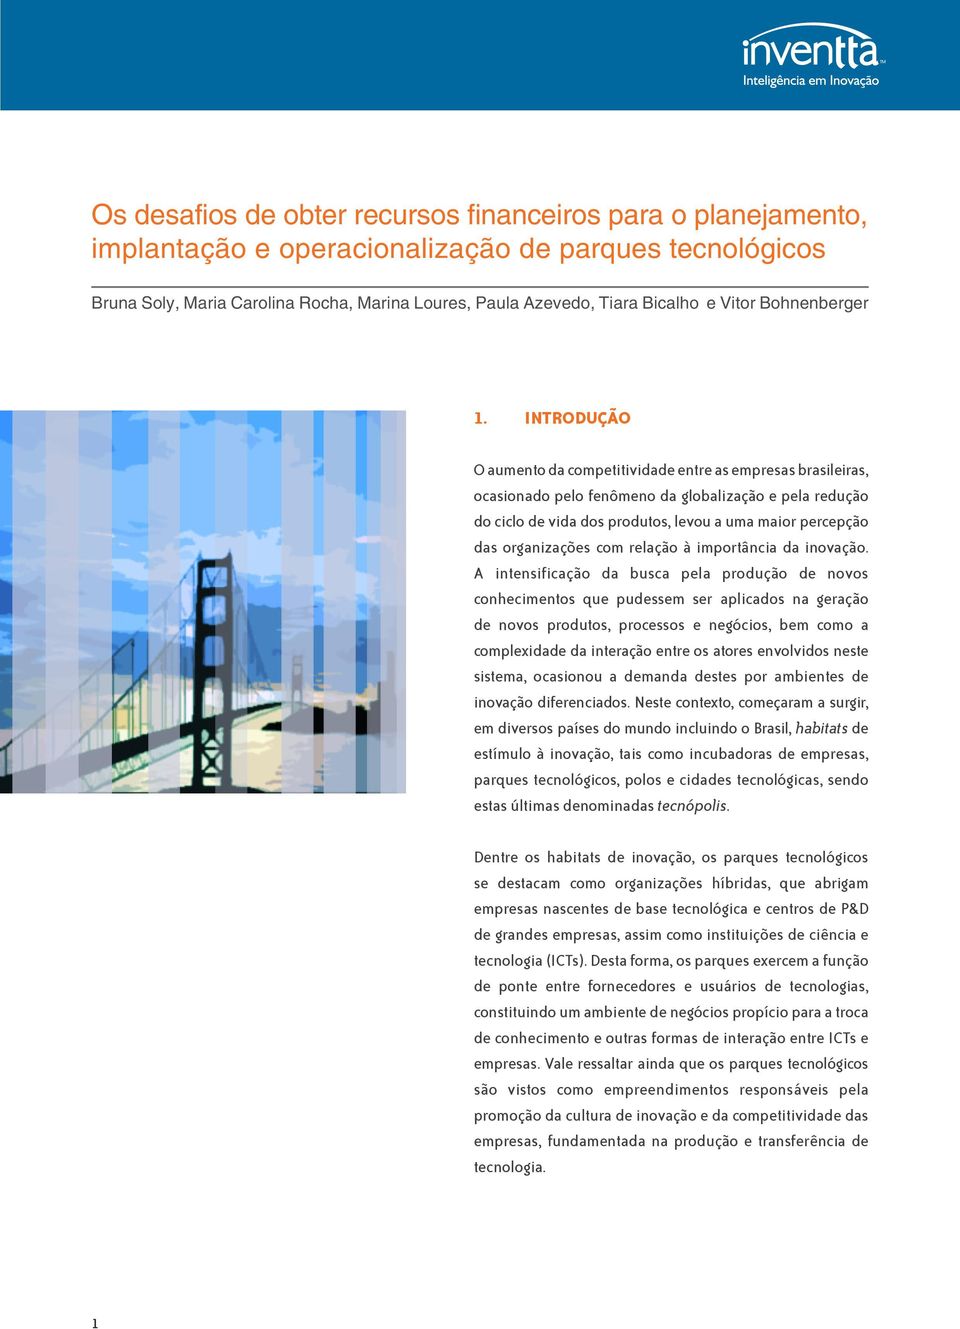 INTRODUÇÃO O aumento da competitividade entre as empresas brasileiras, ocasionado pelo fenômeno da globalização e pela redução do ciclo de vida dos produtos, levou a uma maior percepção das